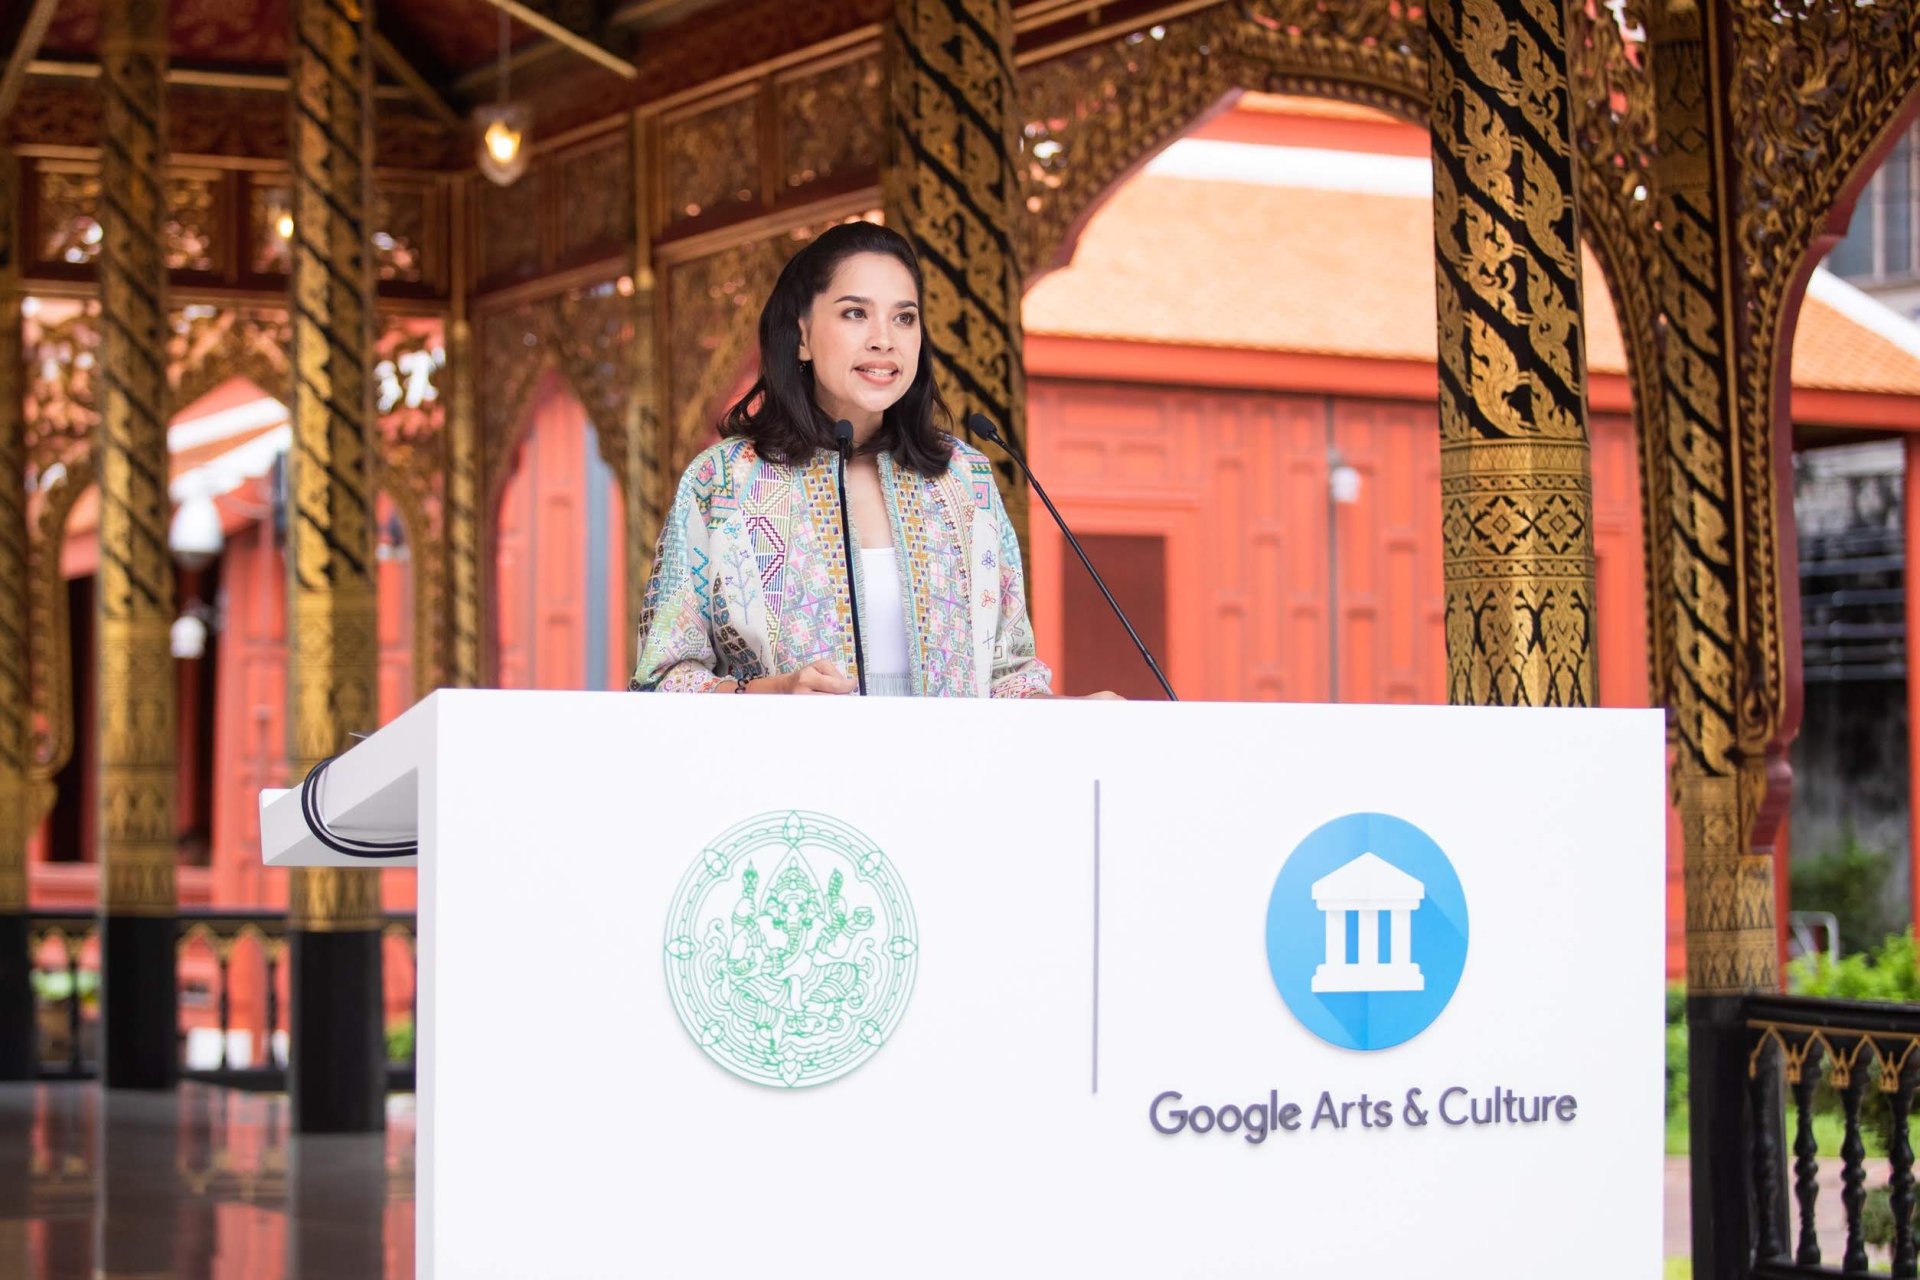 กรมศิลปากรเปิดมิติใหม่ พาสำรวจวังหน้า พร้อมแหล่งเรียนรู้ด้านศิลปะและวัฒนธรรมได้ทุกที่ ผ่าน Google Arts & Culture